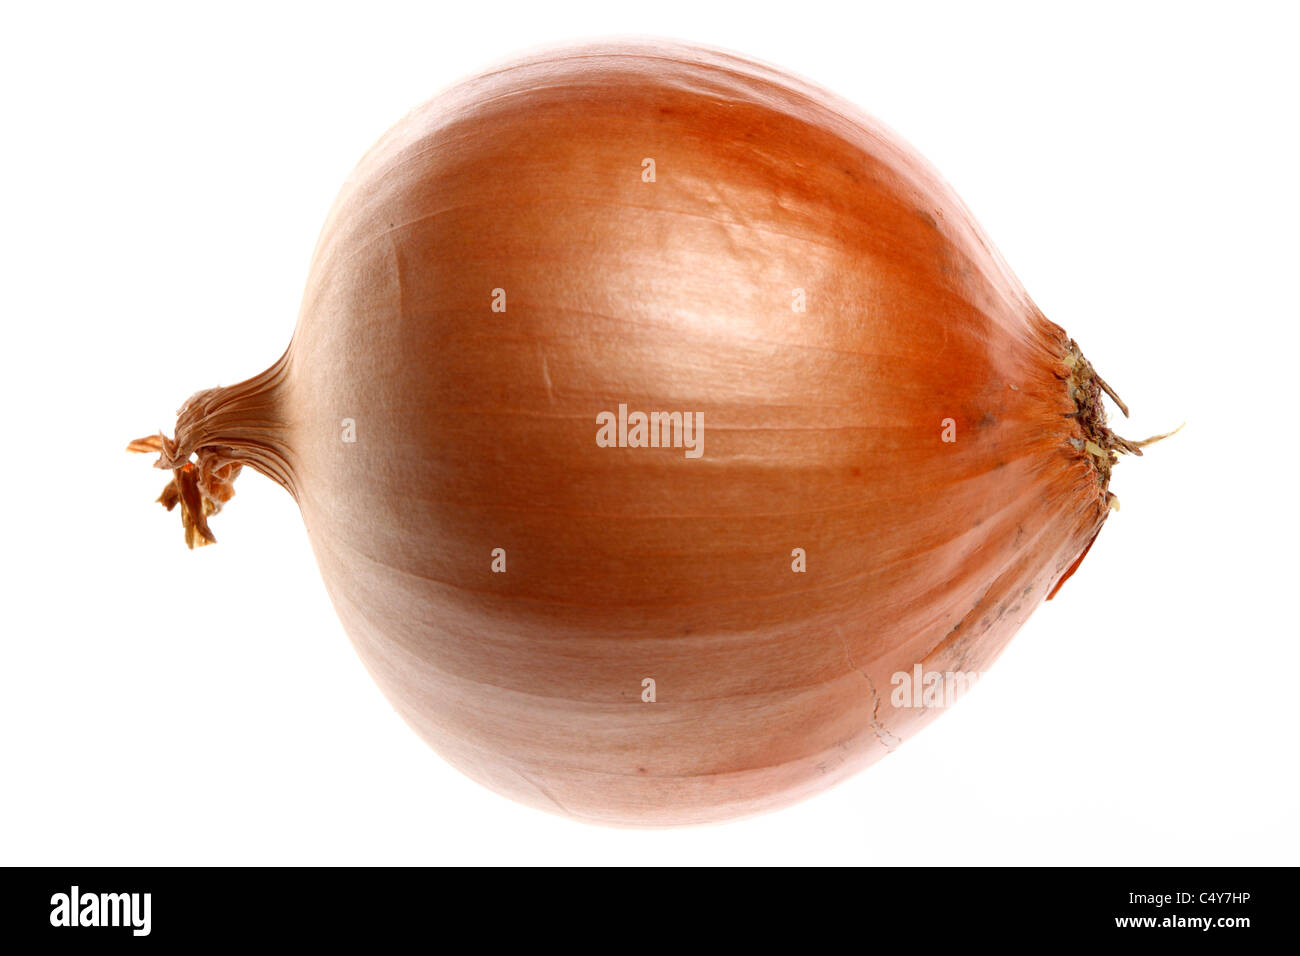 Vegetable, onion, garden onion, Stock Photo